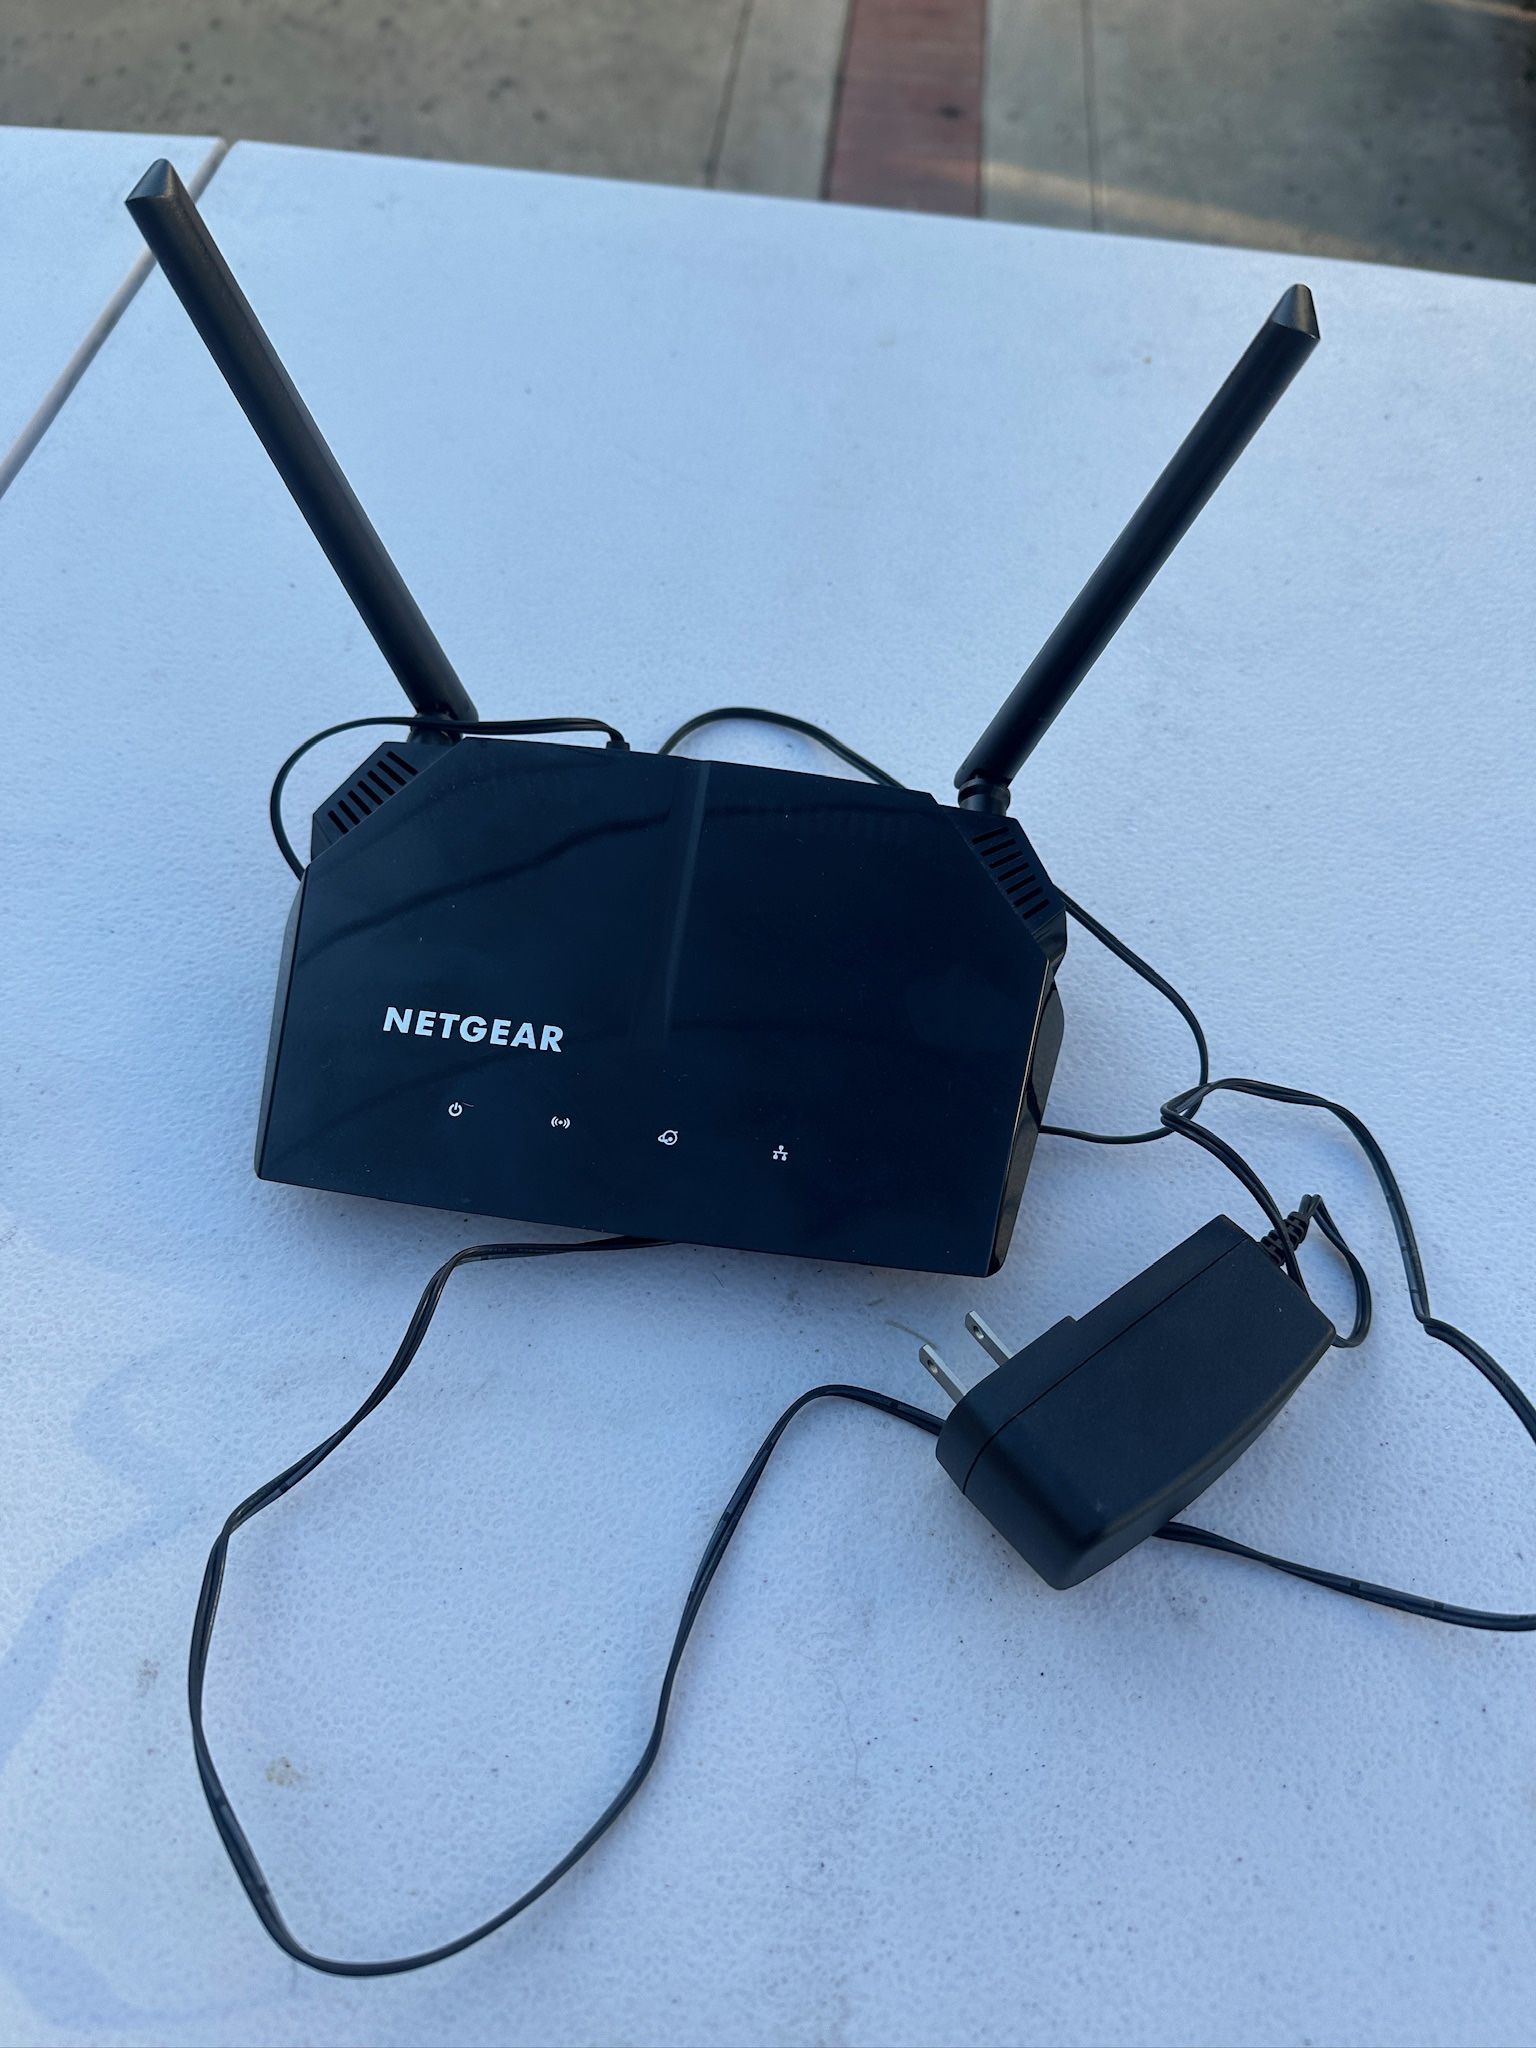 NetGear nighthawk wireless router